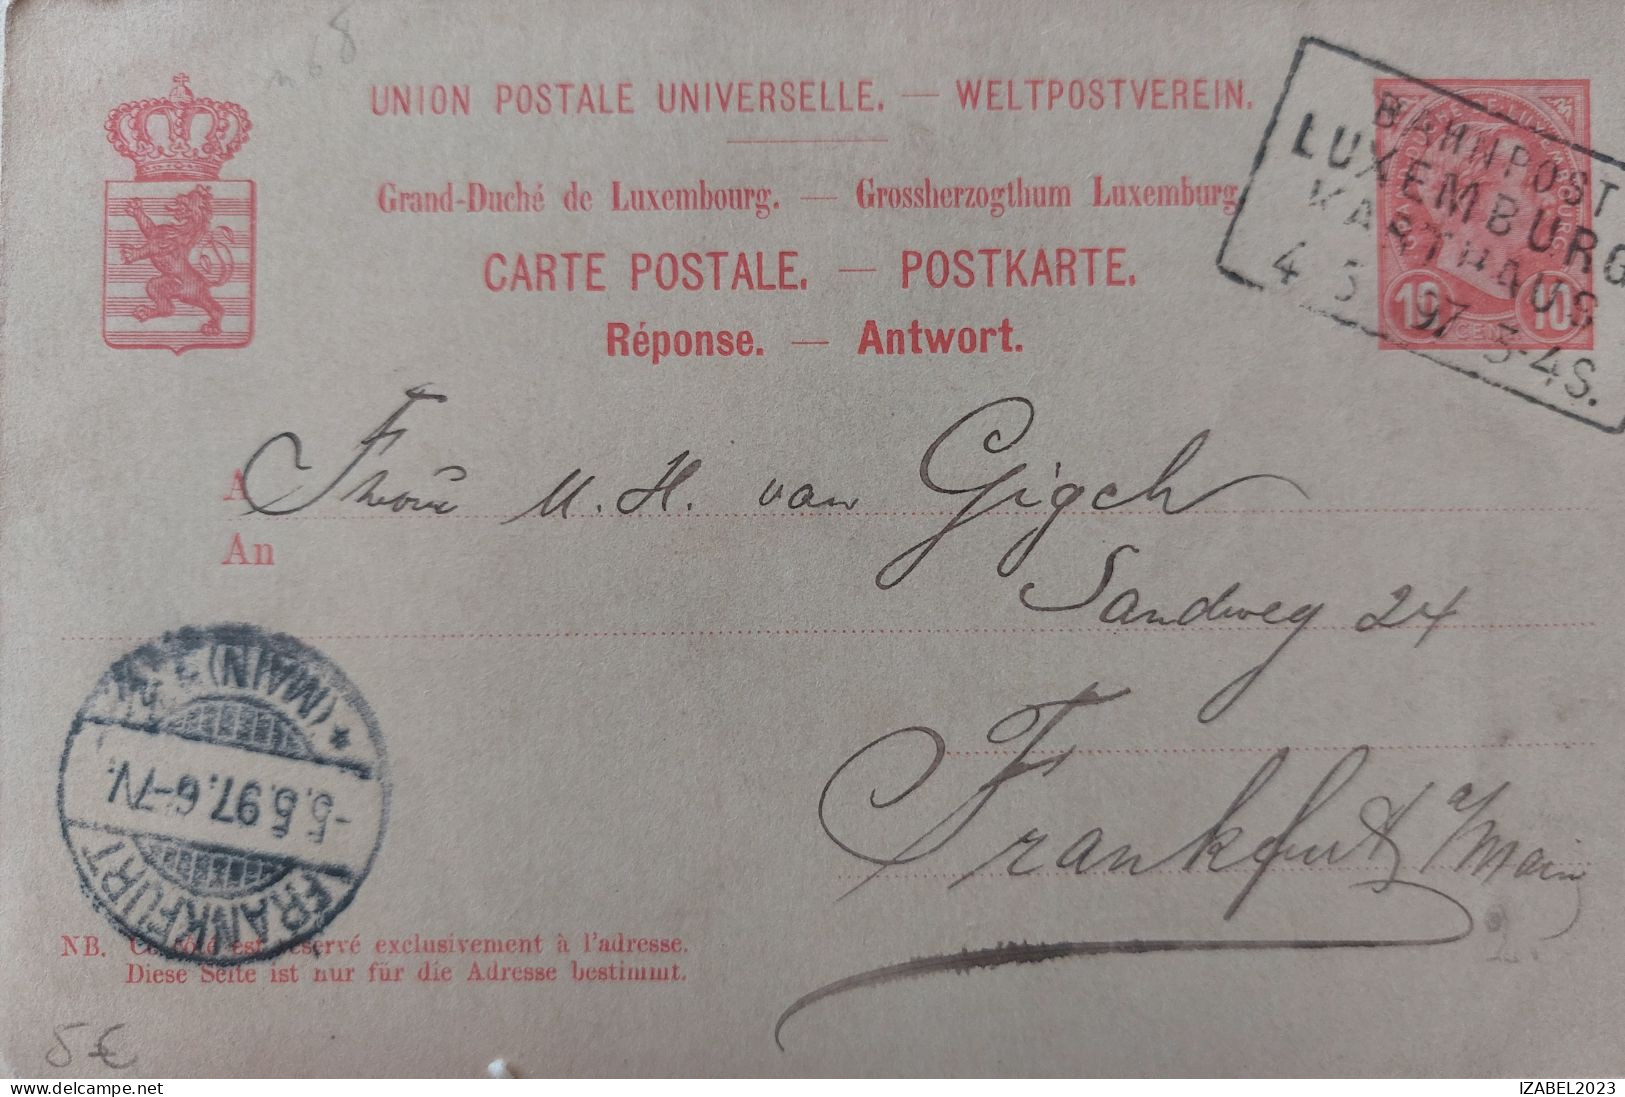 CP Luxembourg 1897. Dbl Marque BAHNPOST LUXEMBURG KARTHAUS. V.munchen - 1895 Adolfo Di Profilo